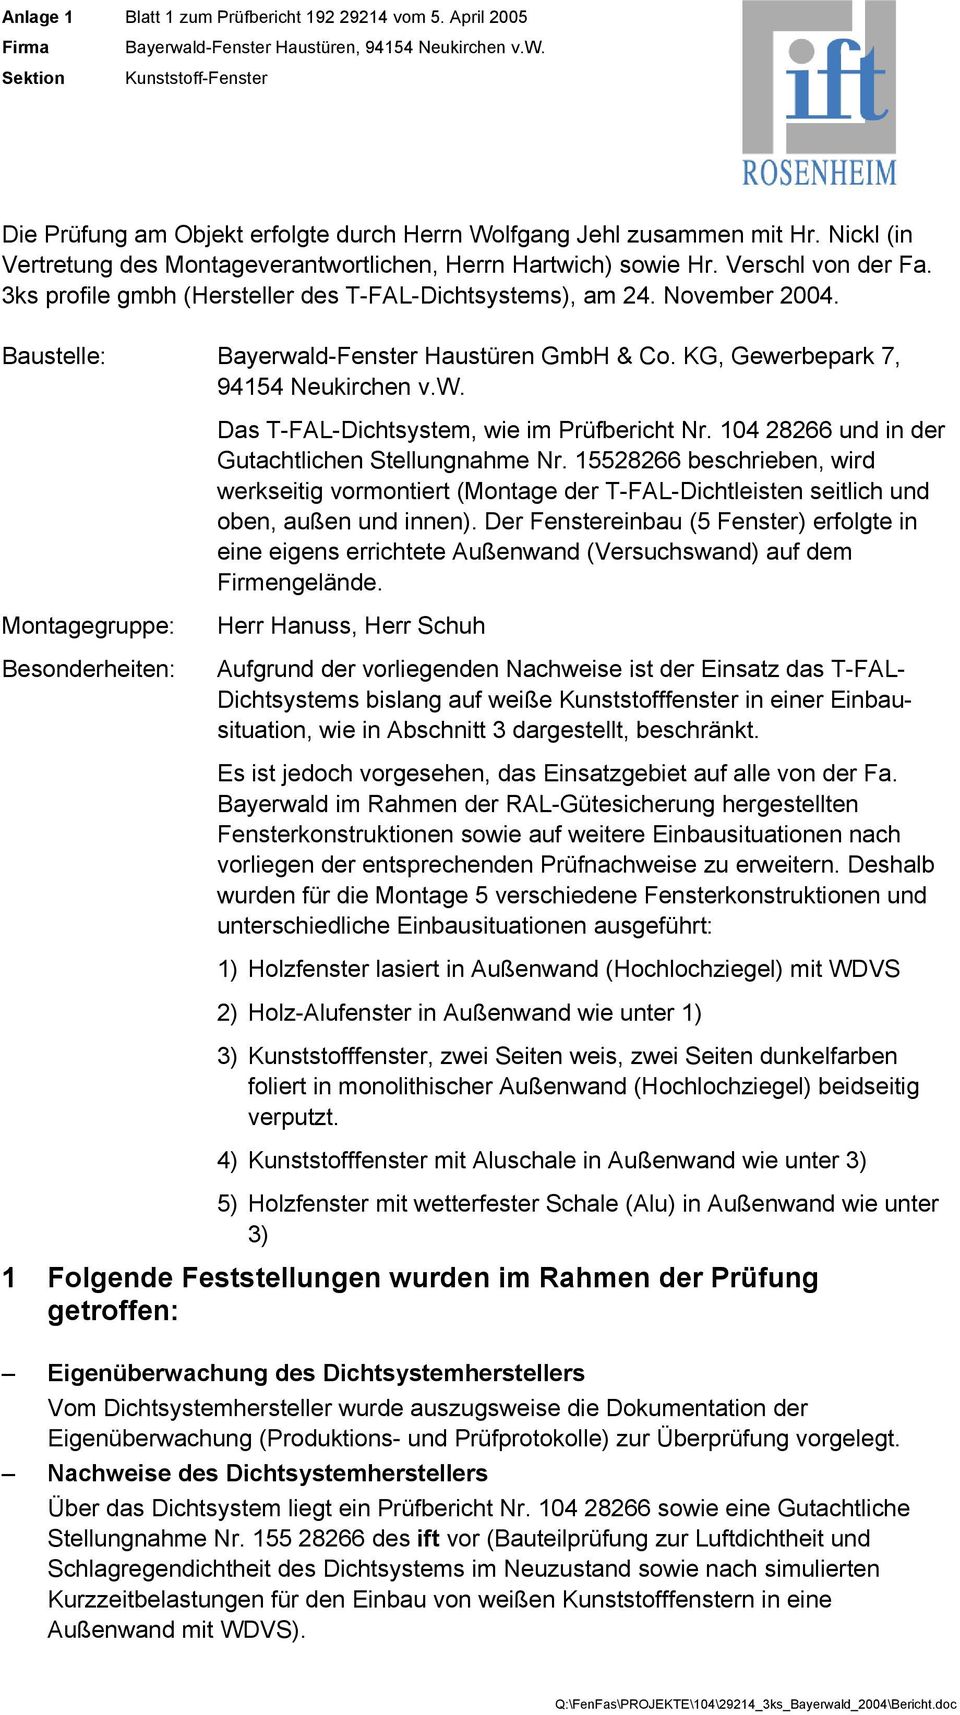 Baustelle: Bayerwald-Fenster Haustüren GmbH & Co. KG, Gewerbepark 7, 94154 Neukirchen v.w. Das T-FAL-Dichtsystem, wie im Prüfbericht Nr. 104 28266 und in der Gutachtlichen Stellungnahme Nr.